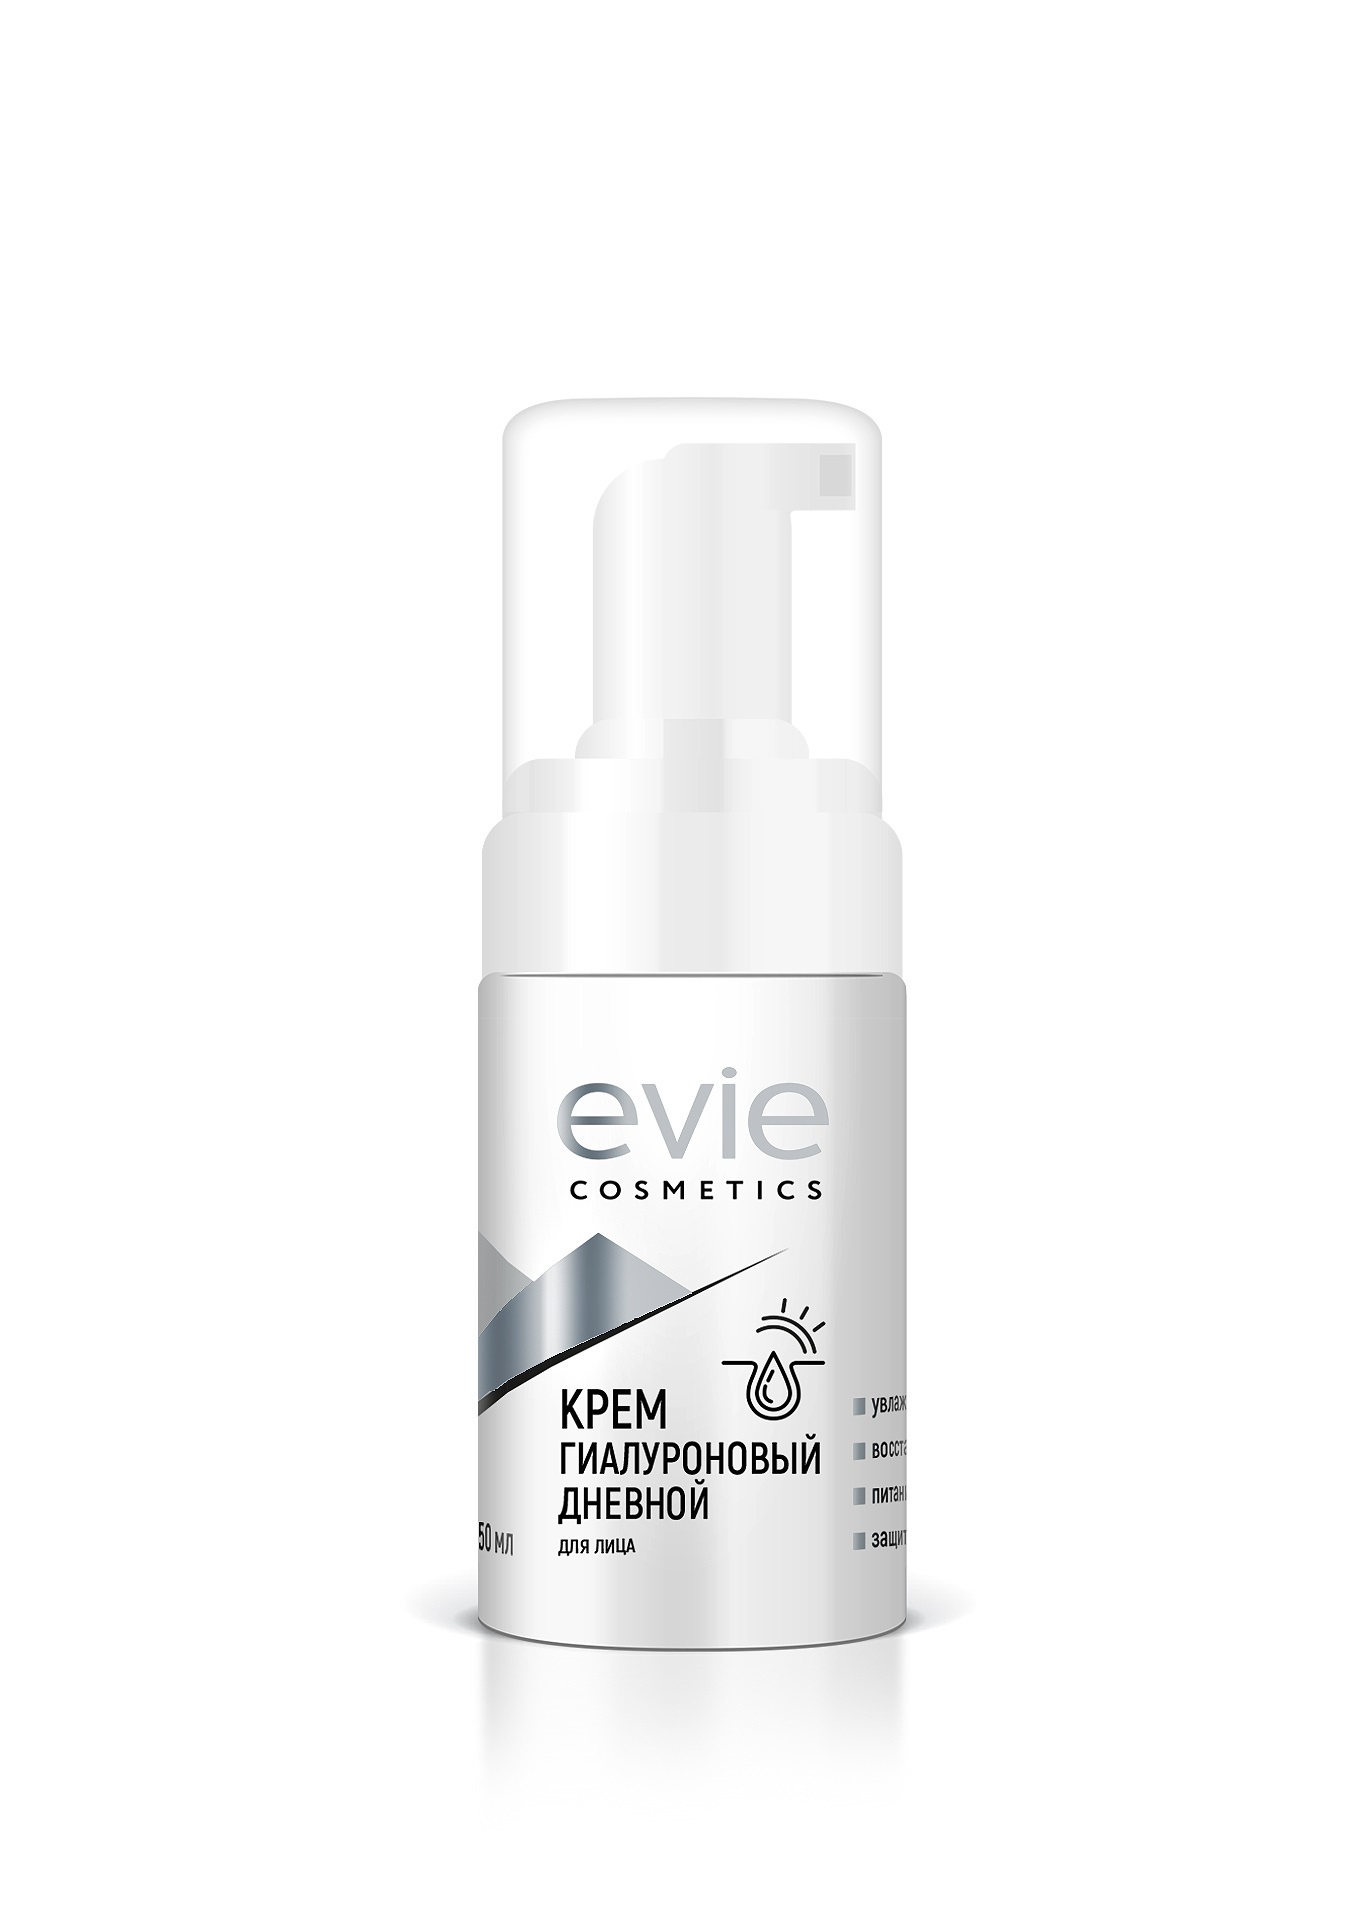 Evie cosmetics крем гиалуроновый дневной для лица 50 мл